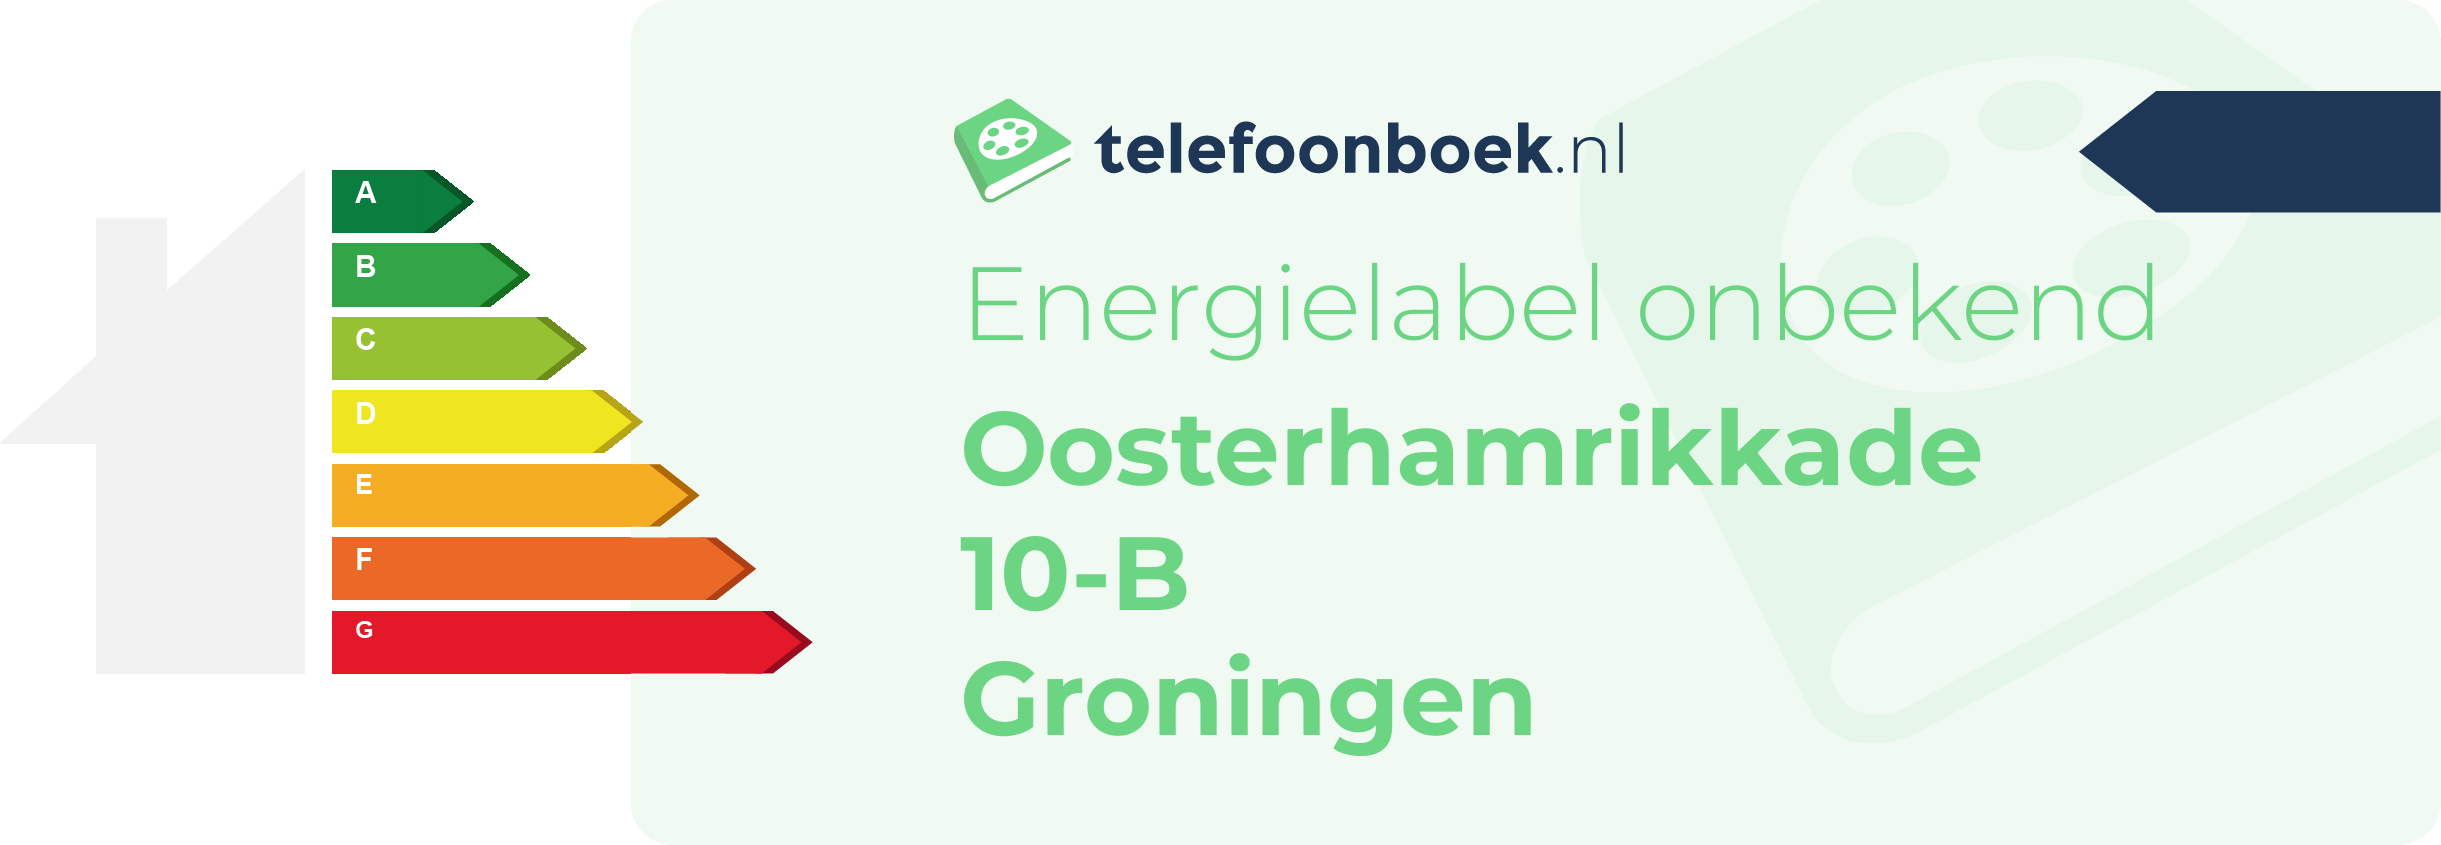 Energielabel Oosterhamrikkade 10-B Groningen